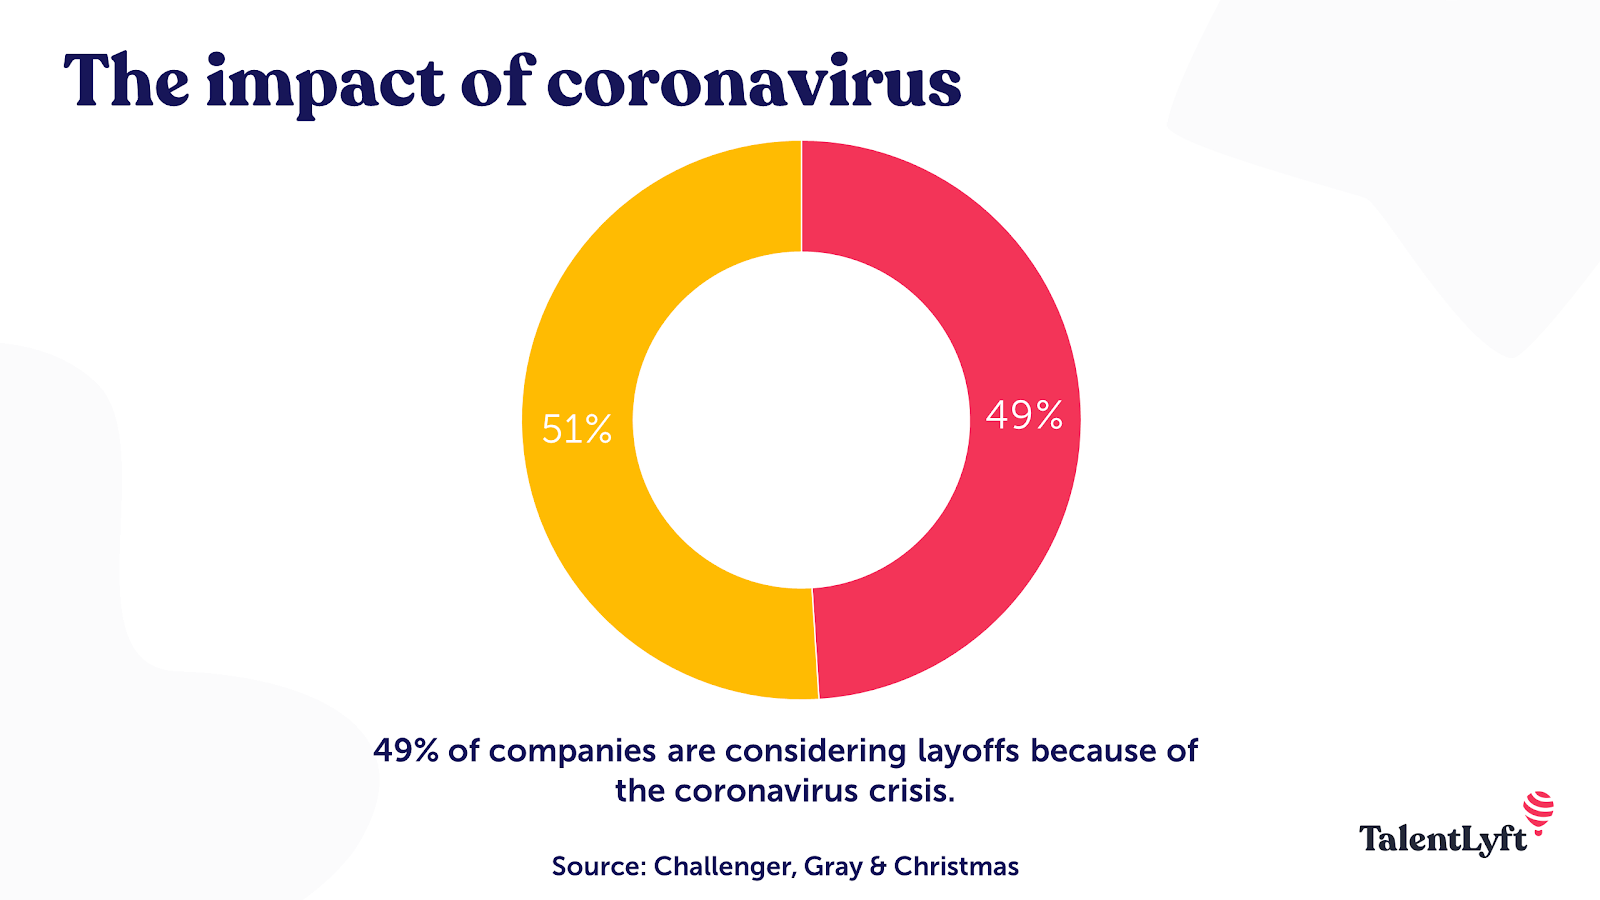 Impact of the coronavirus on the job market